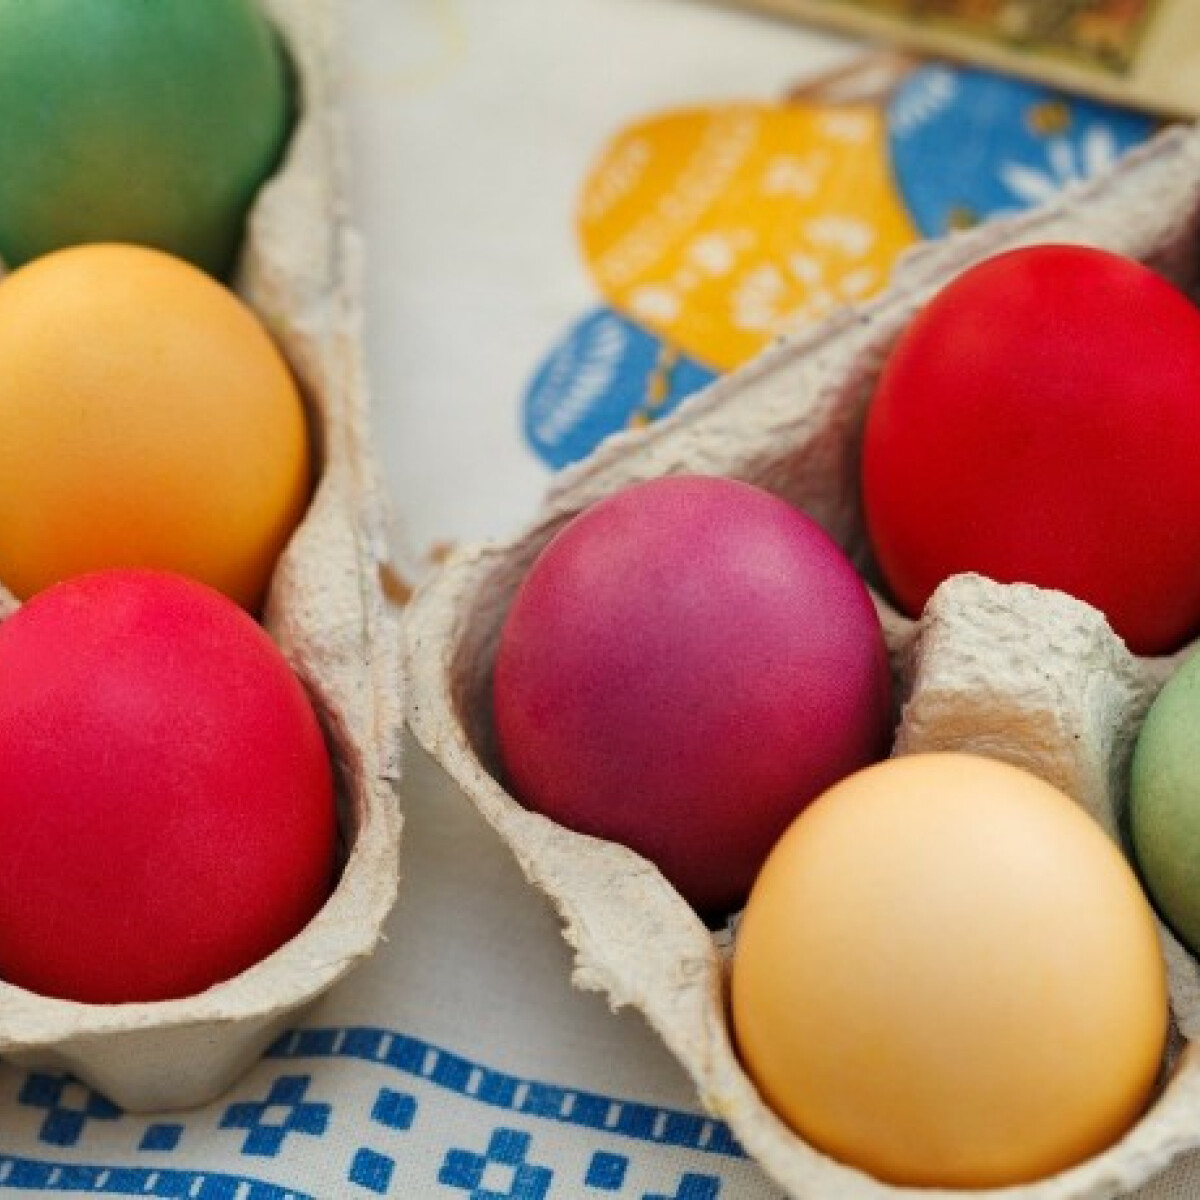 Itt a válasz, jó ötlet-e megenni a festett tojásokat